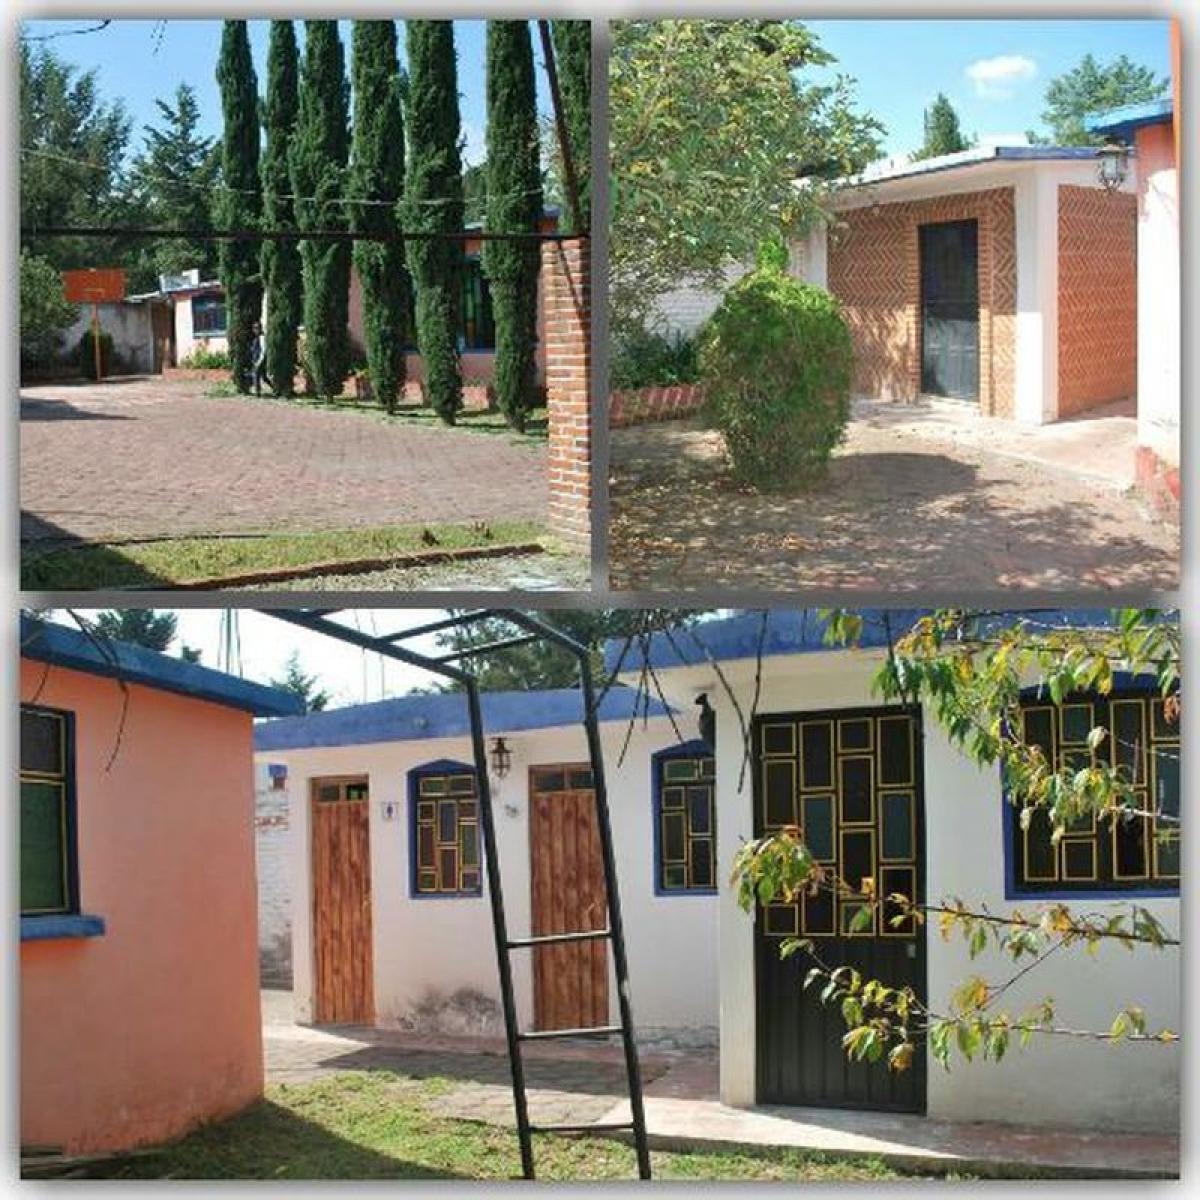 Picture of Development Site For Sale in Estado De Mexico, Mexico, Mexico